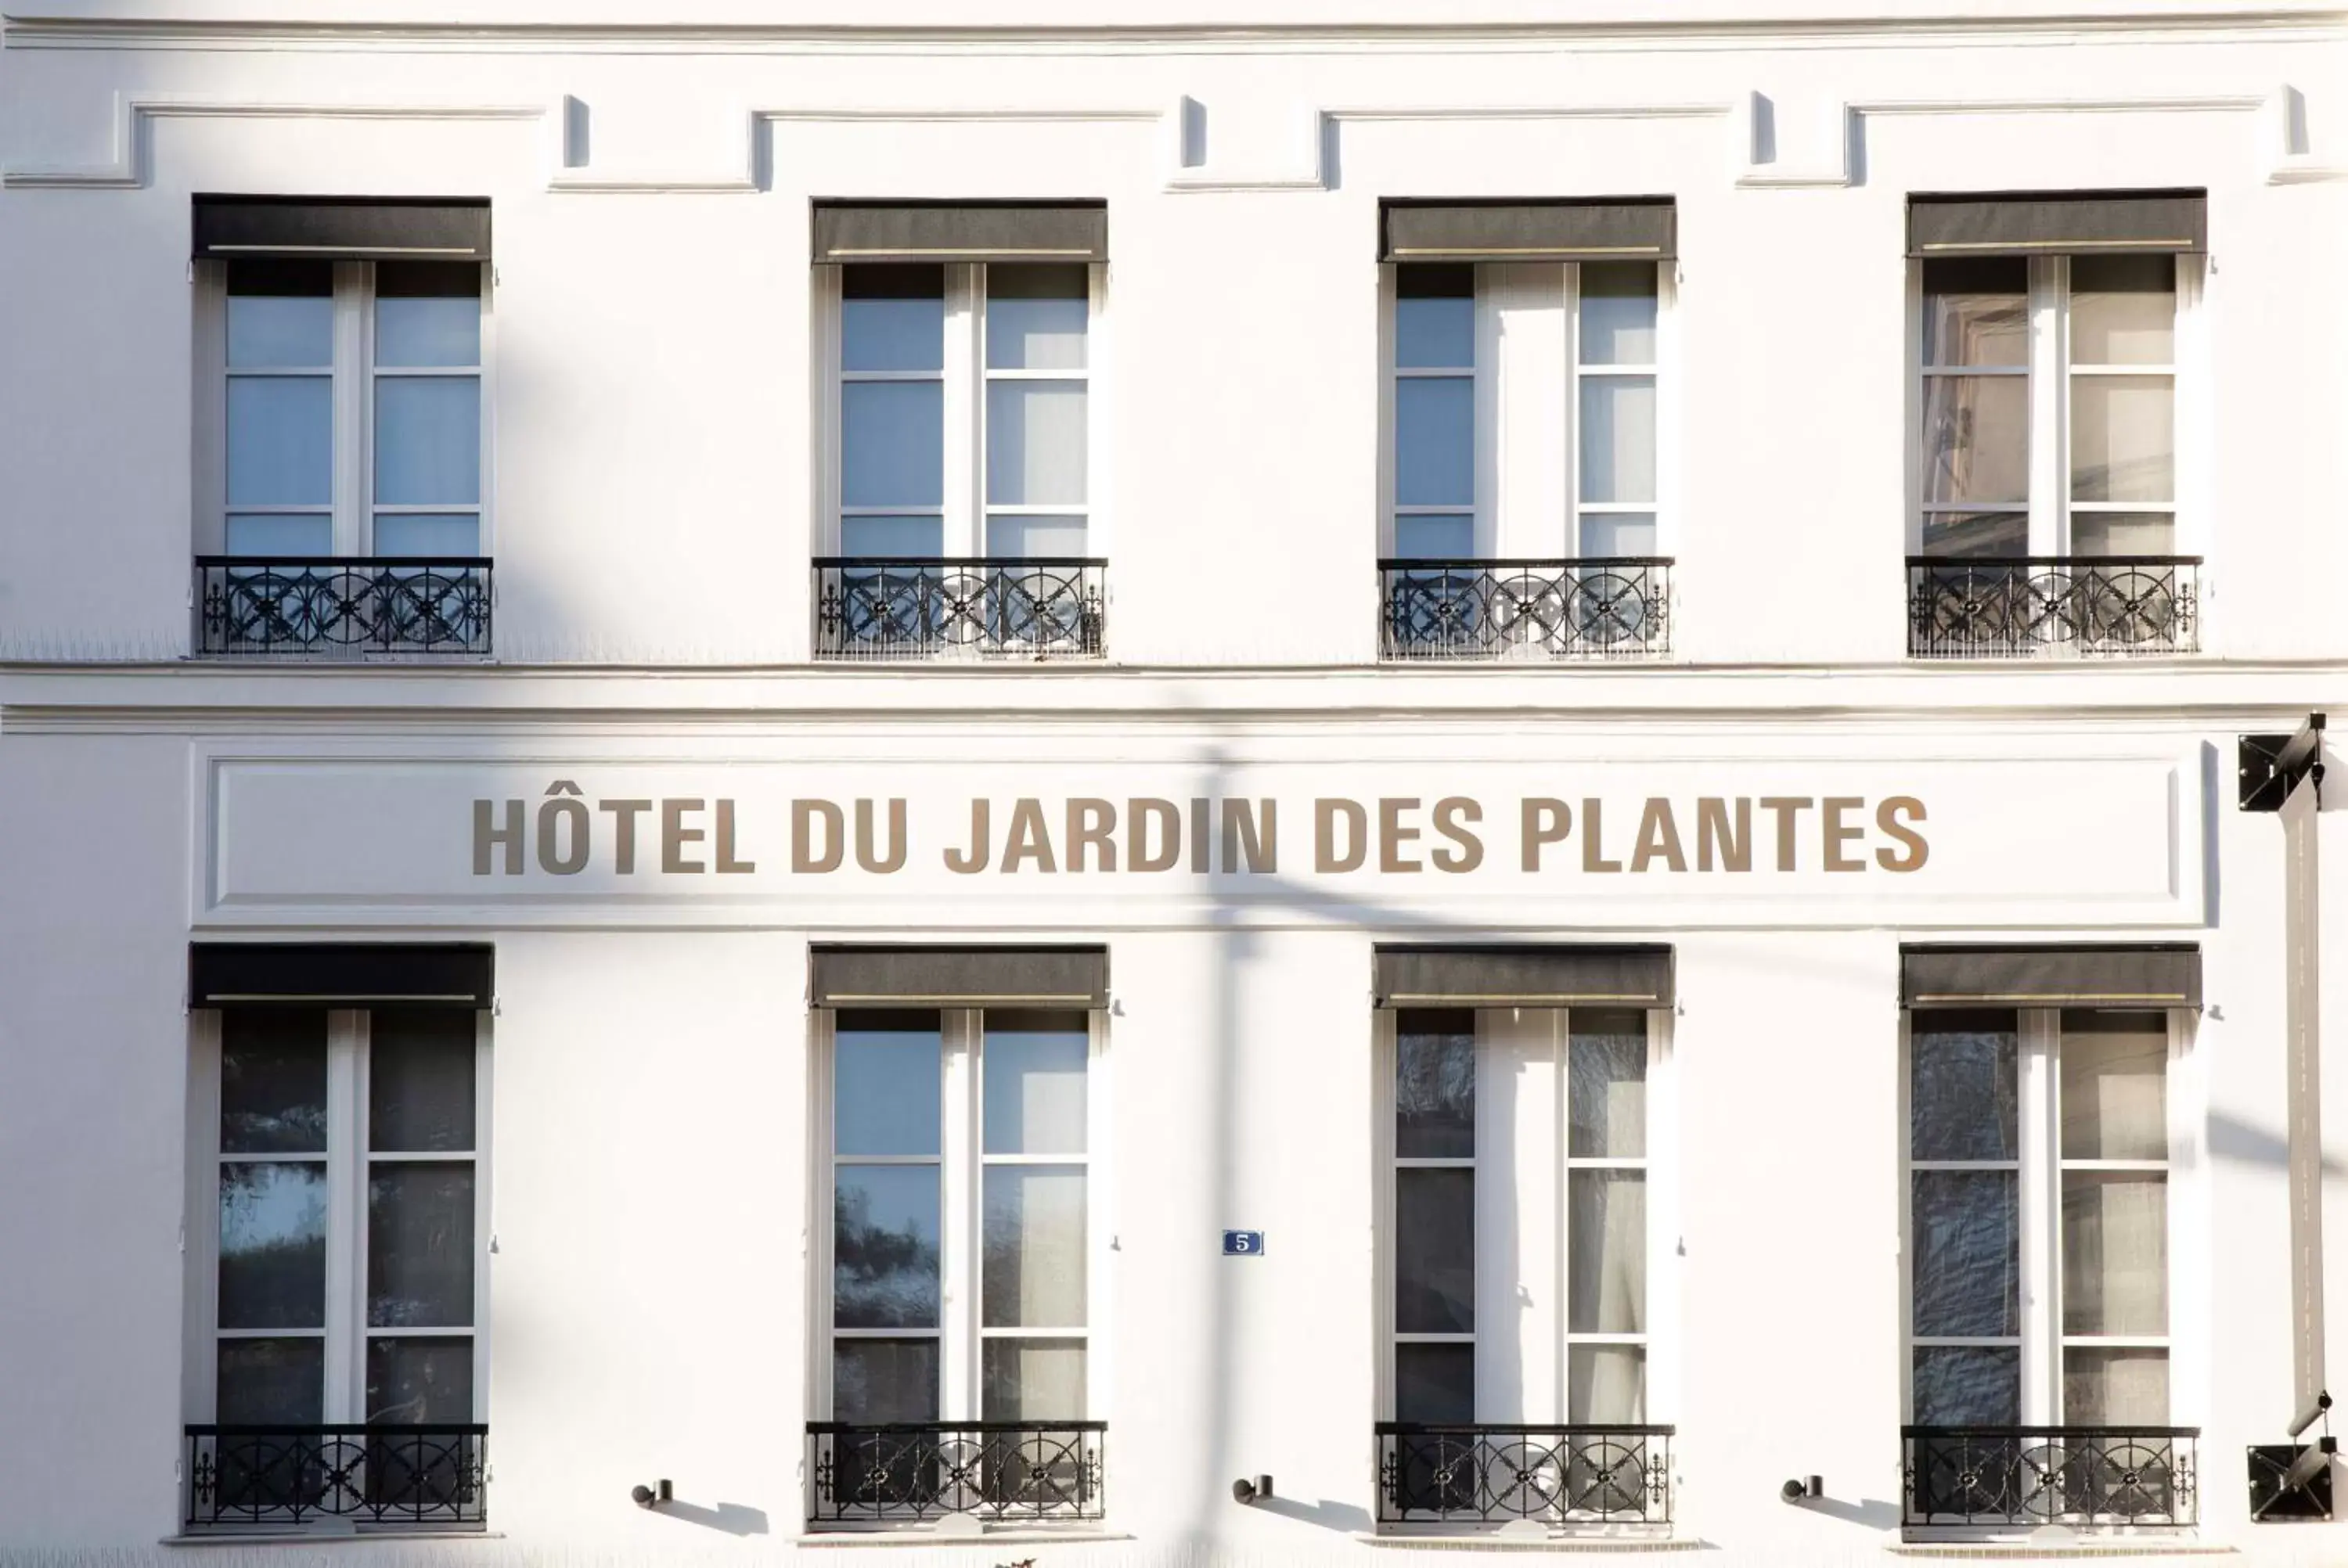 Property Building in Hôtel du Jardin des Plantes